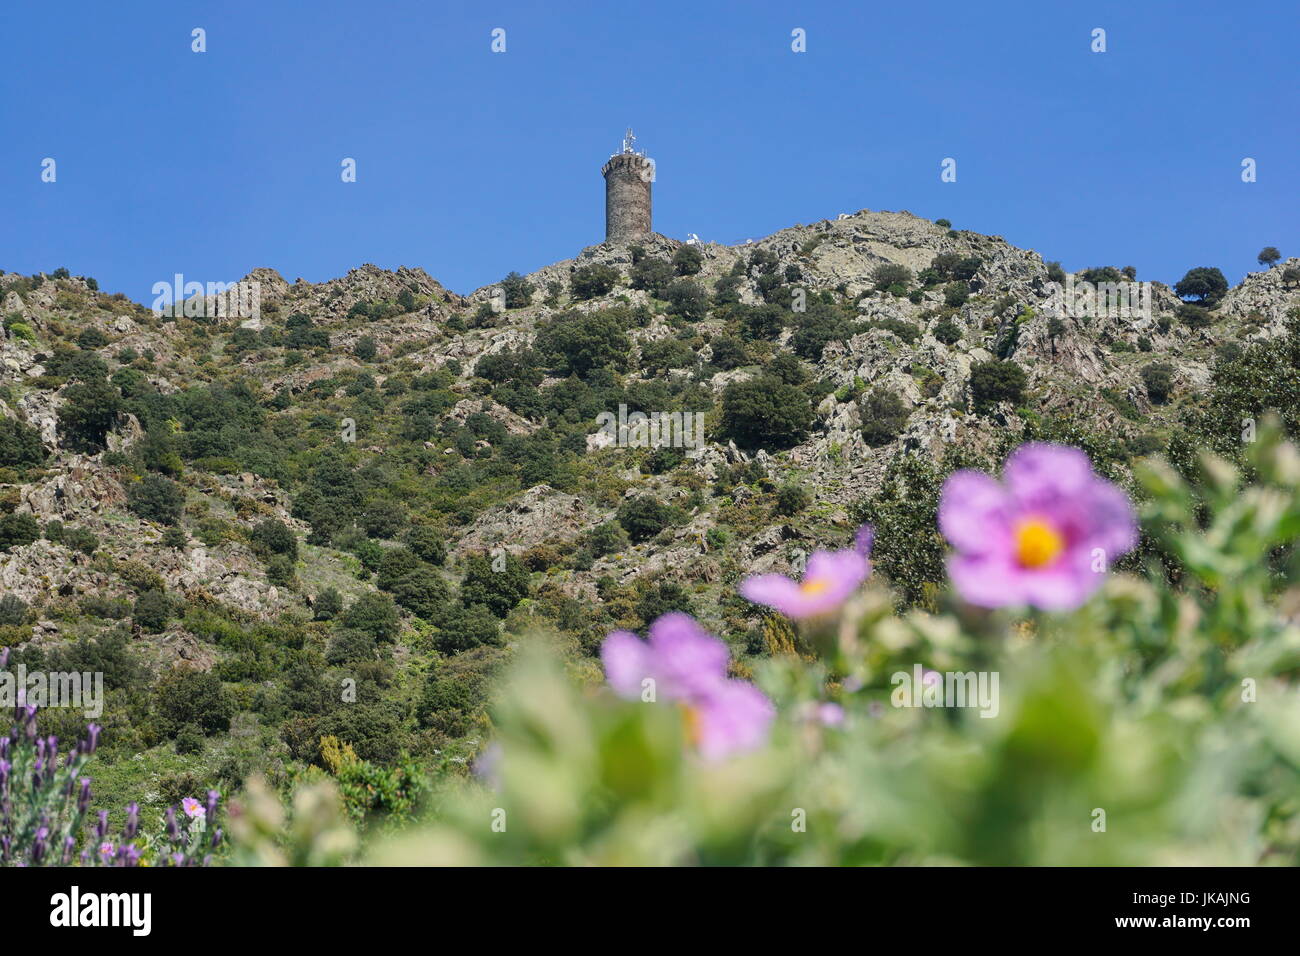 Vieille tour en pierre la Tour Madeloc, cité médiévale à environ 650 mètres de hauteur dans le massif des Albères, Pyrénées Orientales, Roussillon, France Banque D'Images